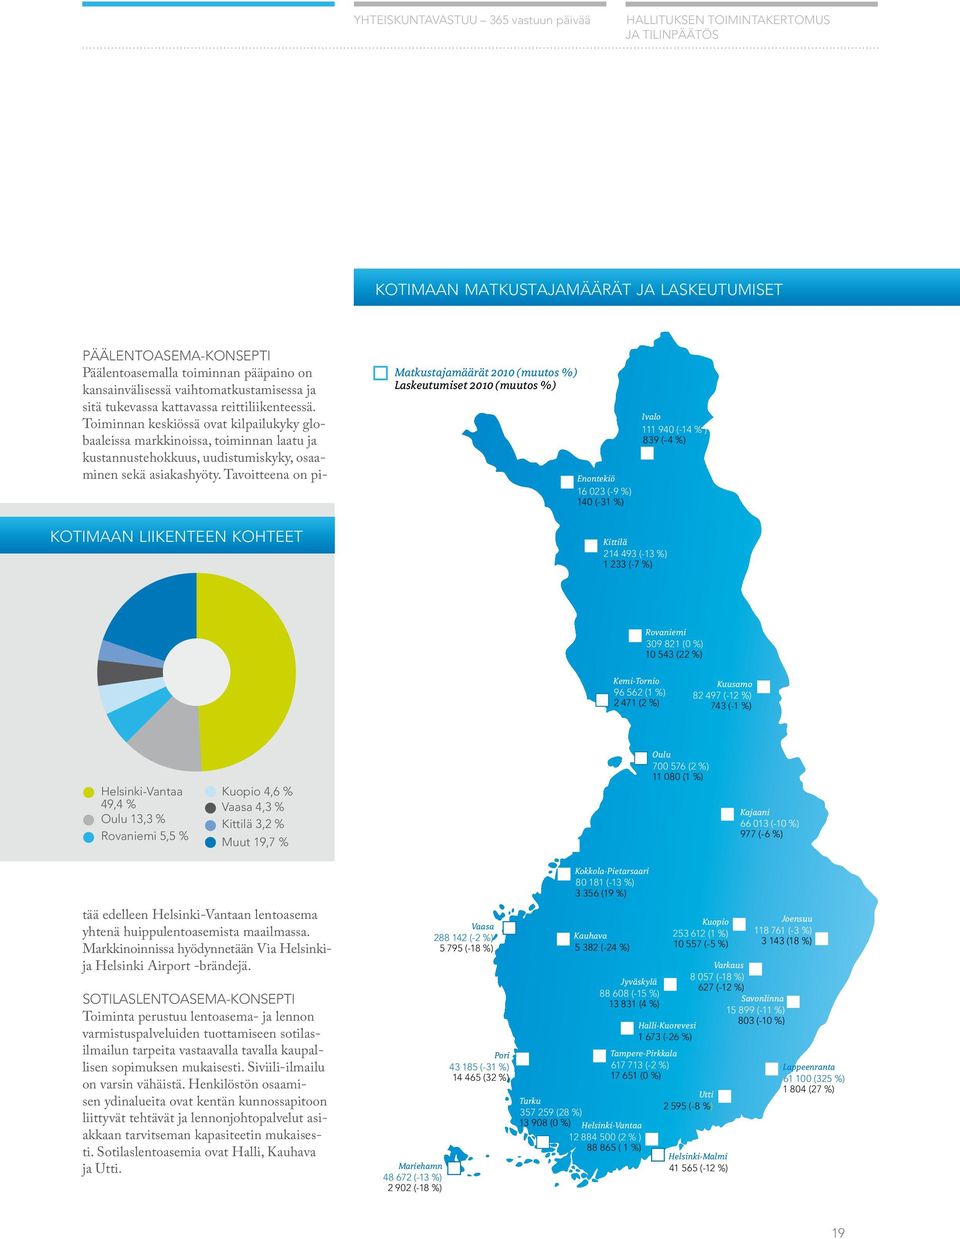 Helsinki-Vantaa 49,4 % Oulu 13,3 % Rovaniemi 5,5 % Kuopio 4,6 % Vaasa 4,3 % Kittilä 3,2 % Muut 19,7 % Oulu 700 576 (2 %) 11 080 (1 %) Kajaani 66 013 (-10 %) 977 (-6 %) Päälentoasema-konsepti